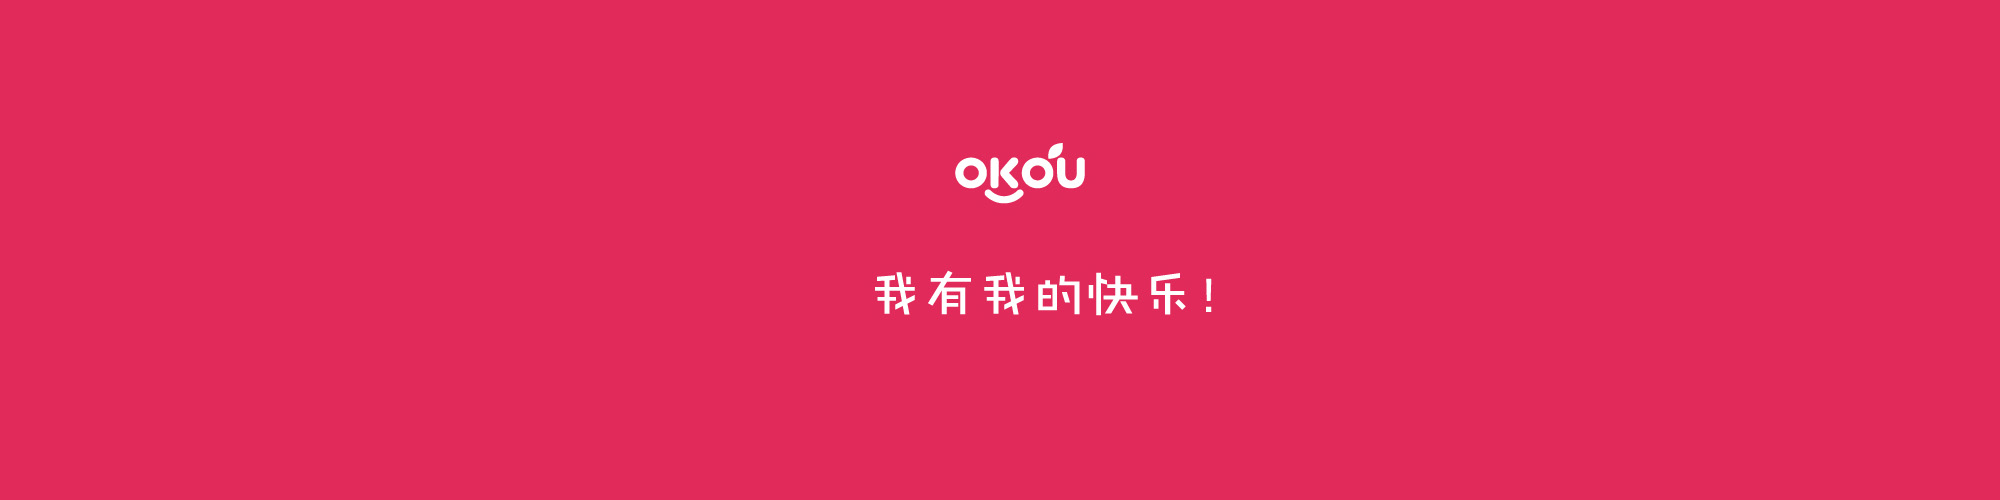 OKOU -北京建站,北京制作网站